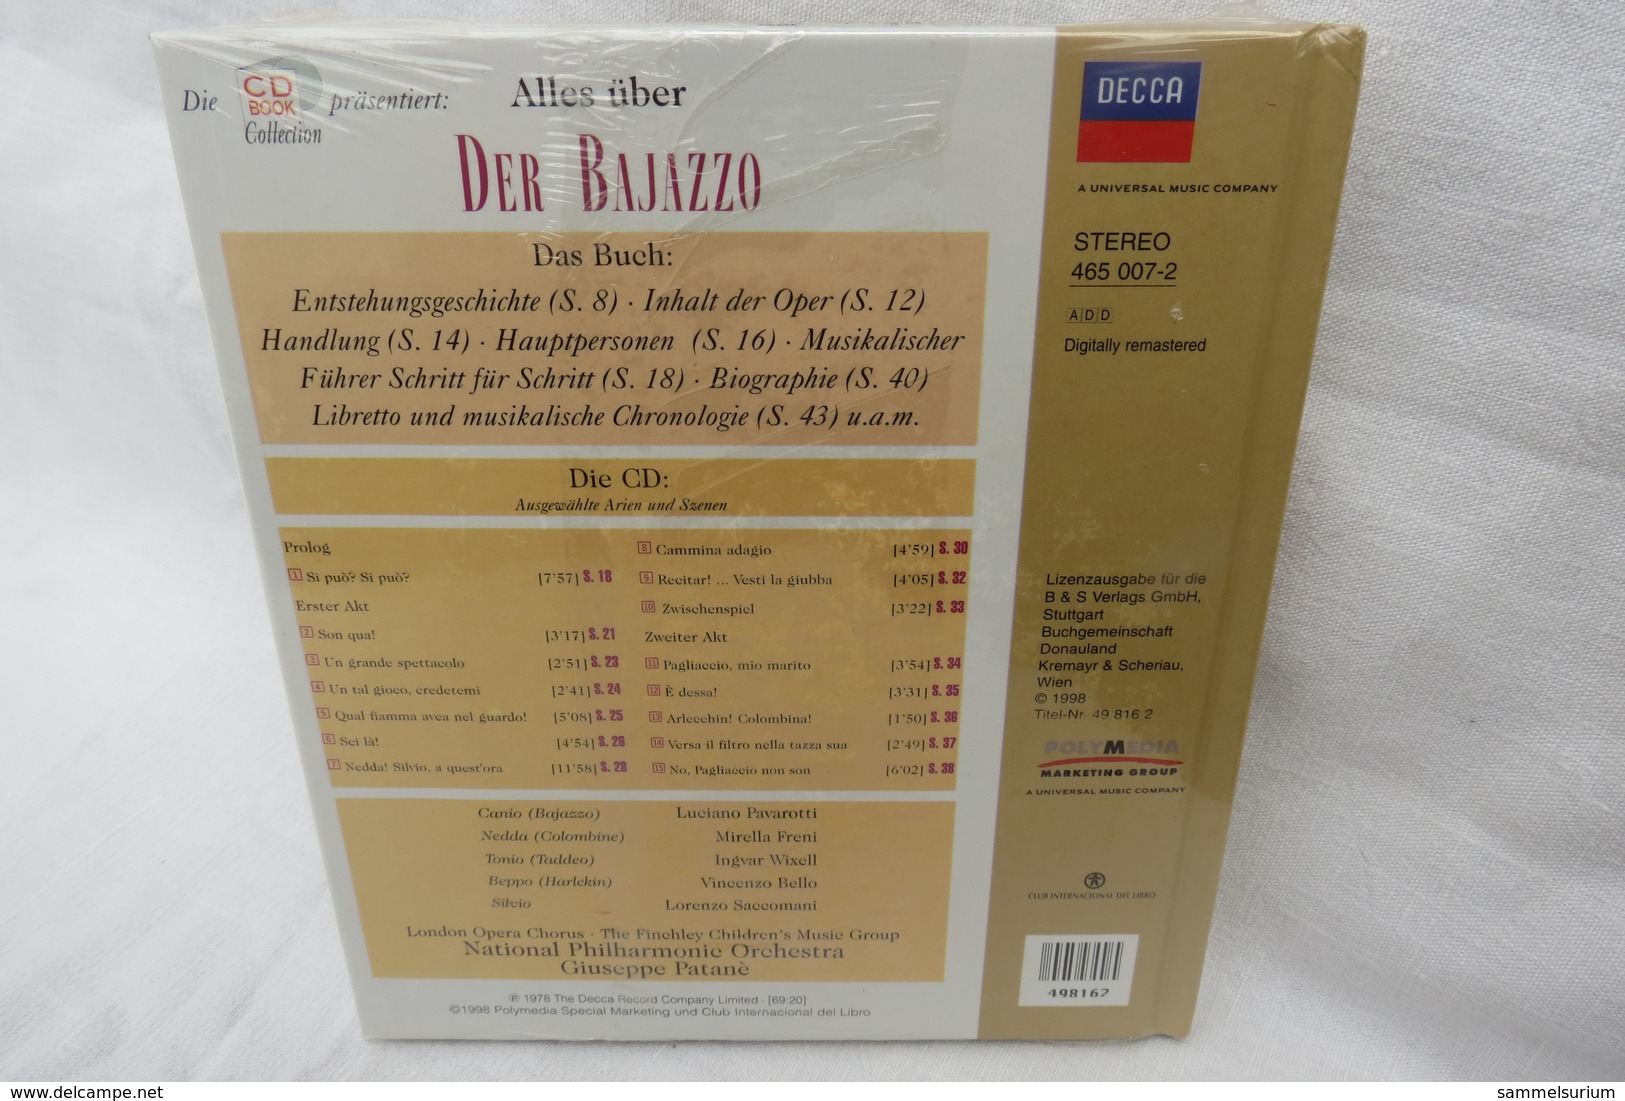 CD "Der Bajazzo / Ruggero Leoncavallo" Mit Buch Aus Der CD Book Collection (ungeöffnet, Original Eingeschweißt) - Opera